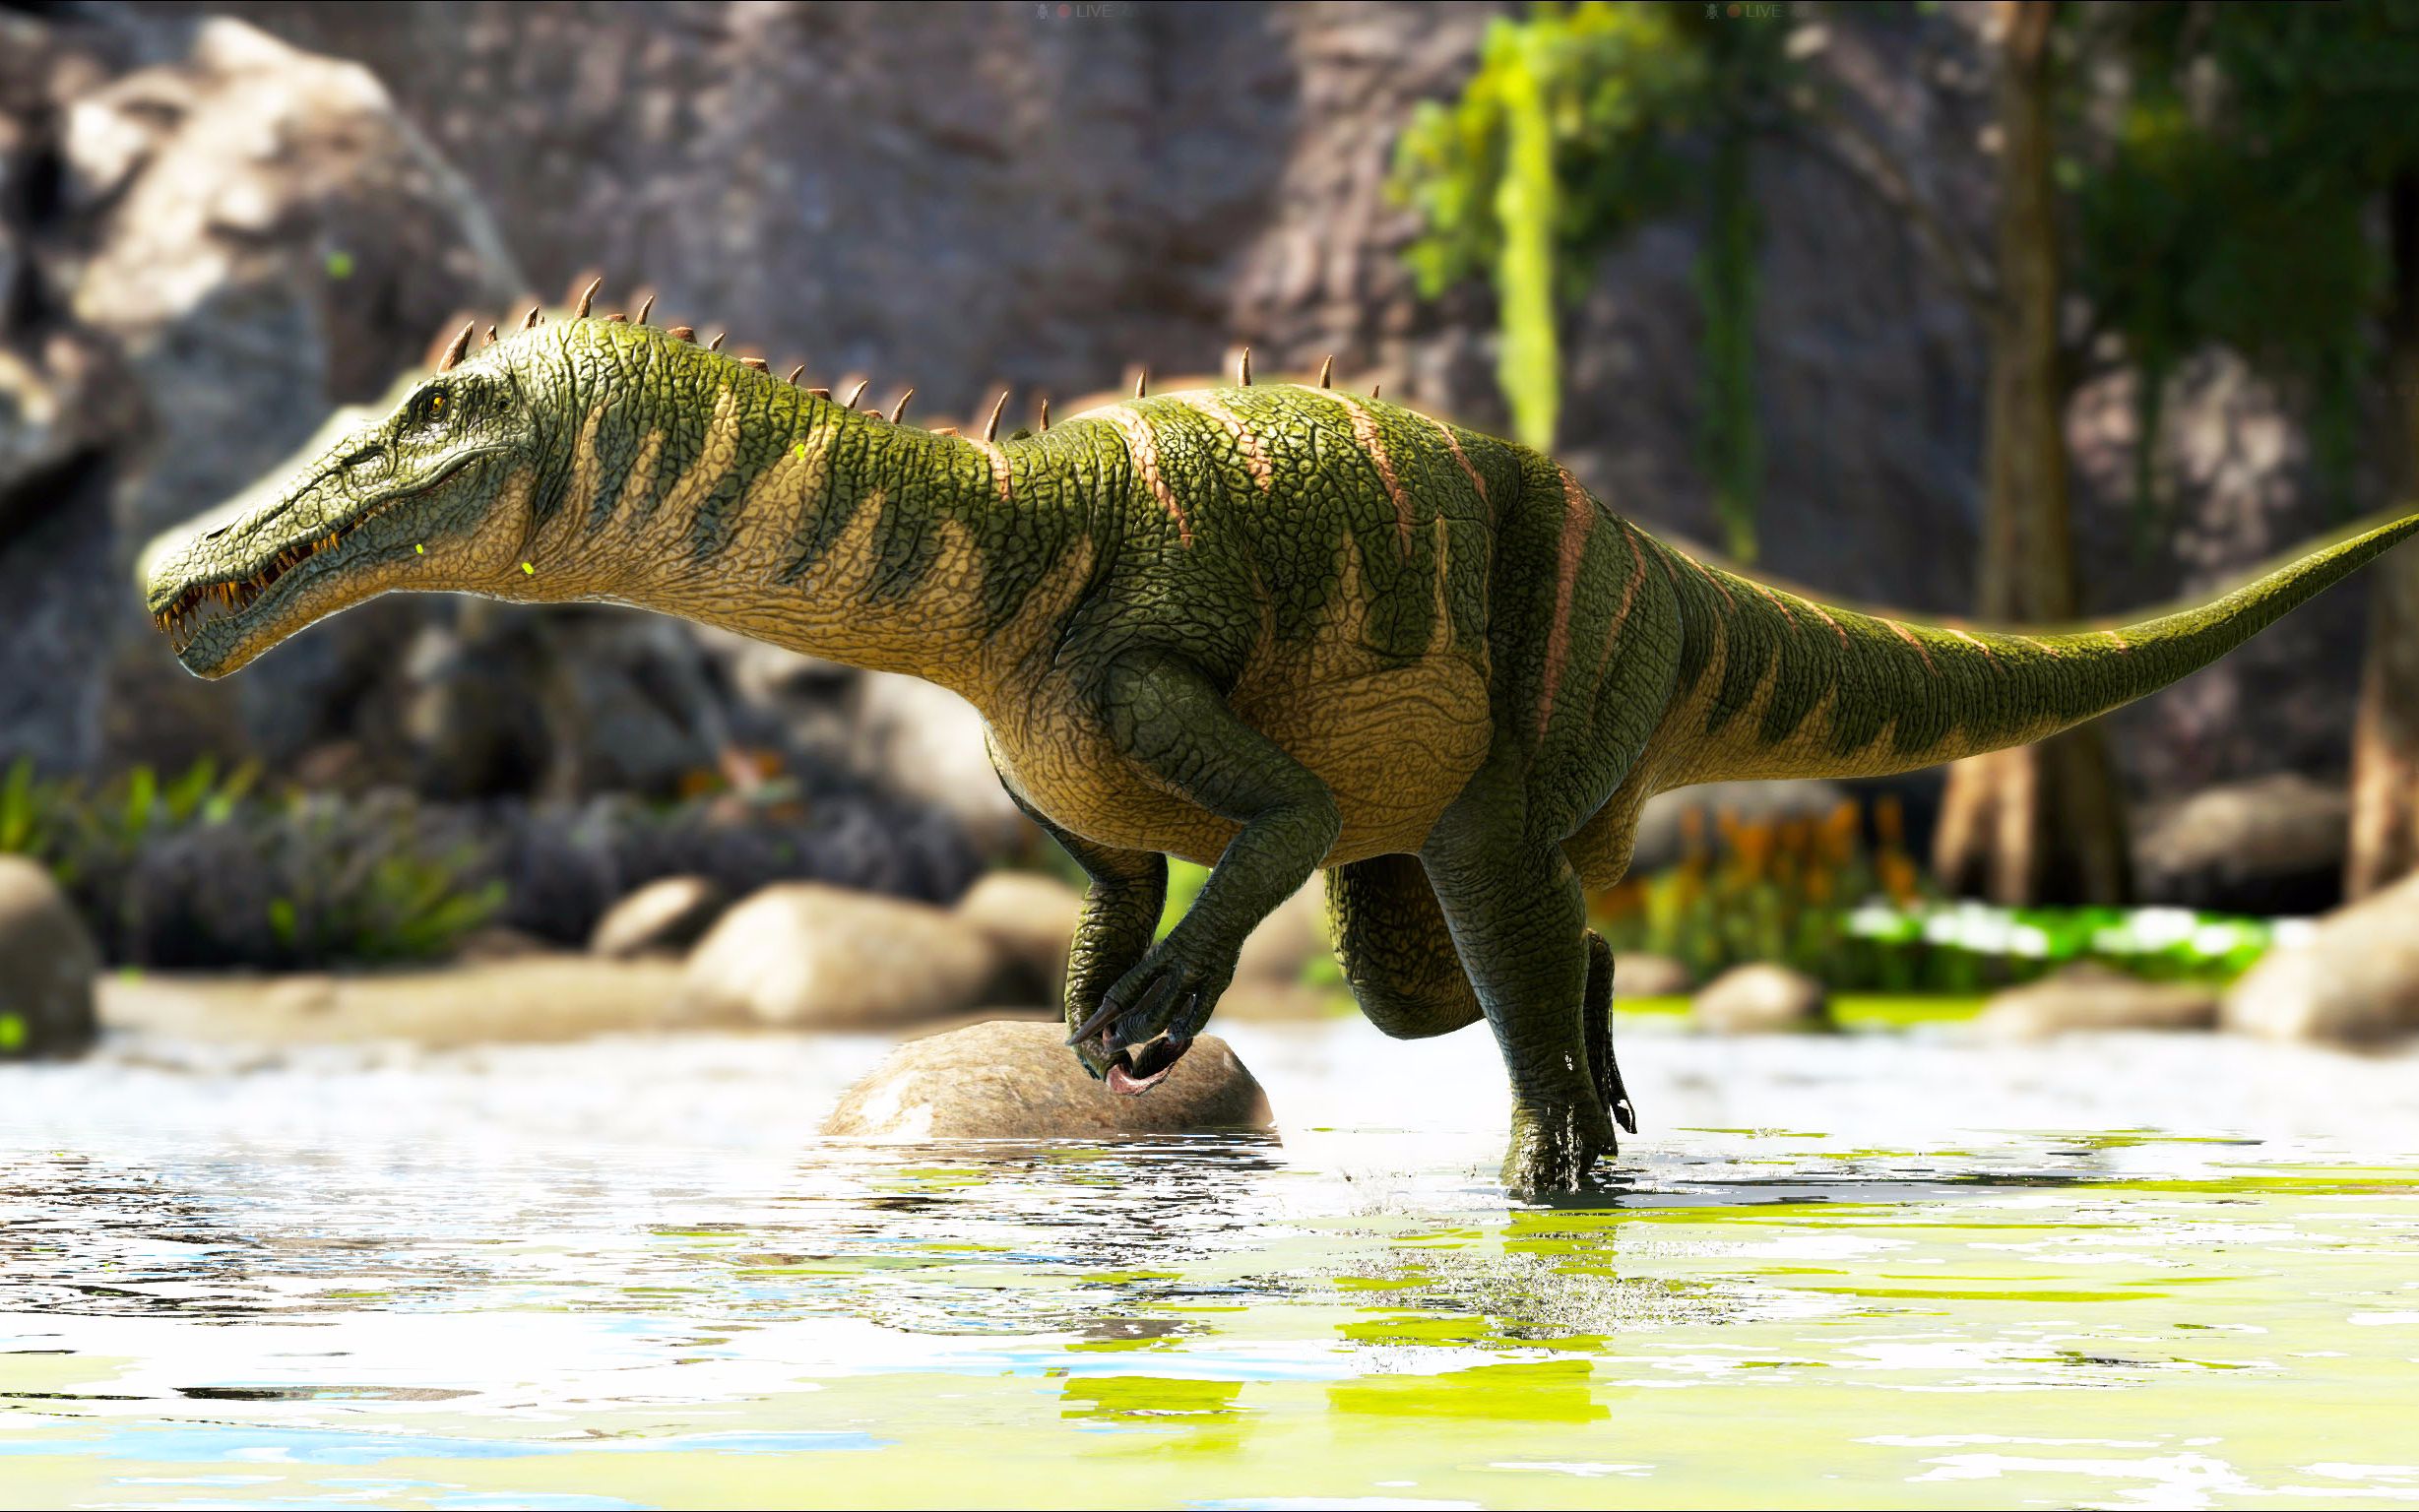 《方舟手游》捕捉新恐龙重爪龙,可以放大招的恐龙